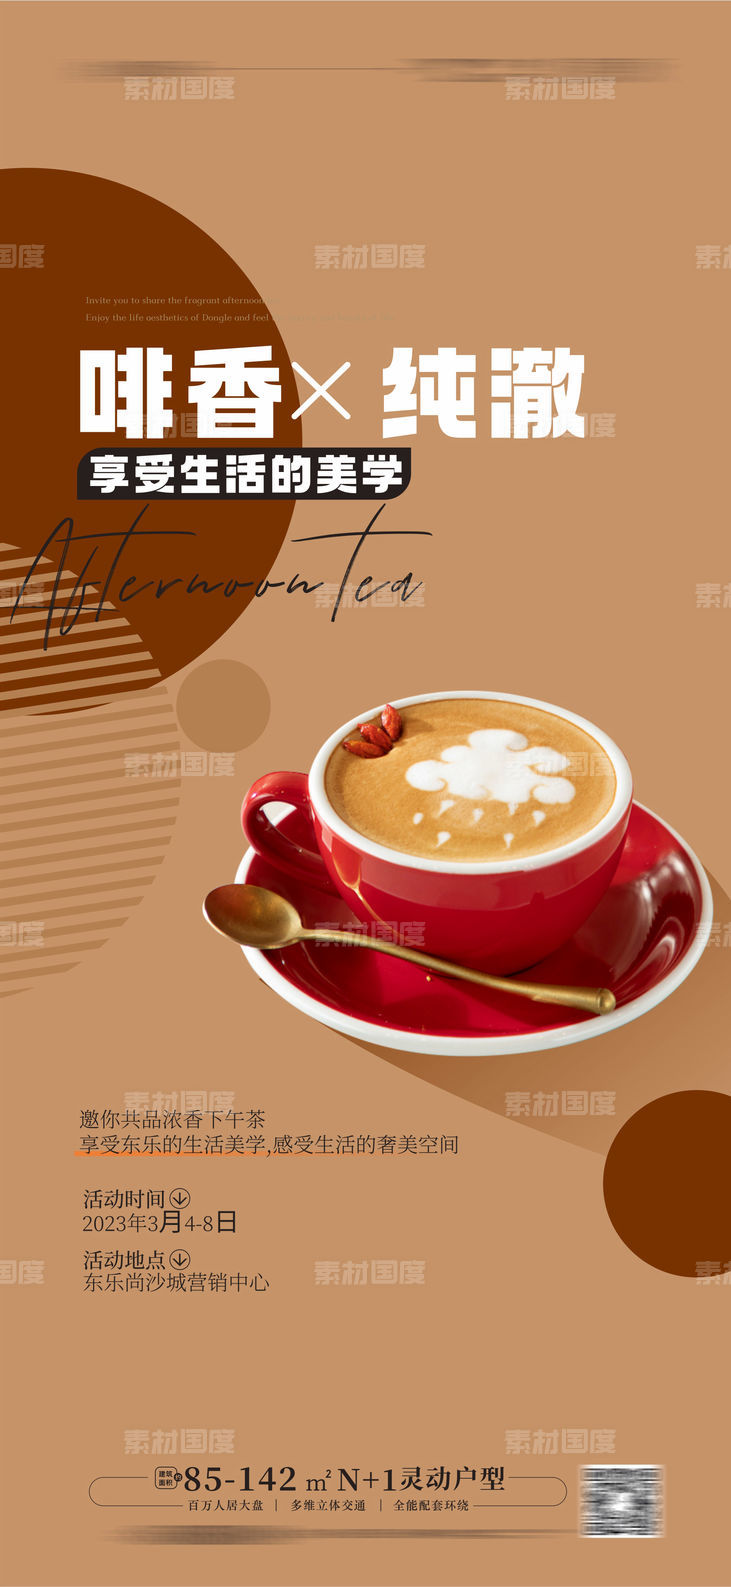 咖啡 下午茶活动海报